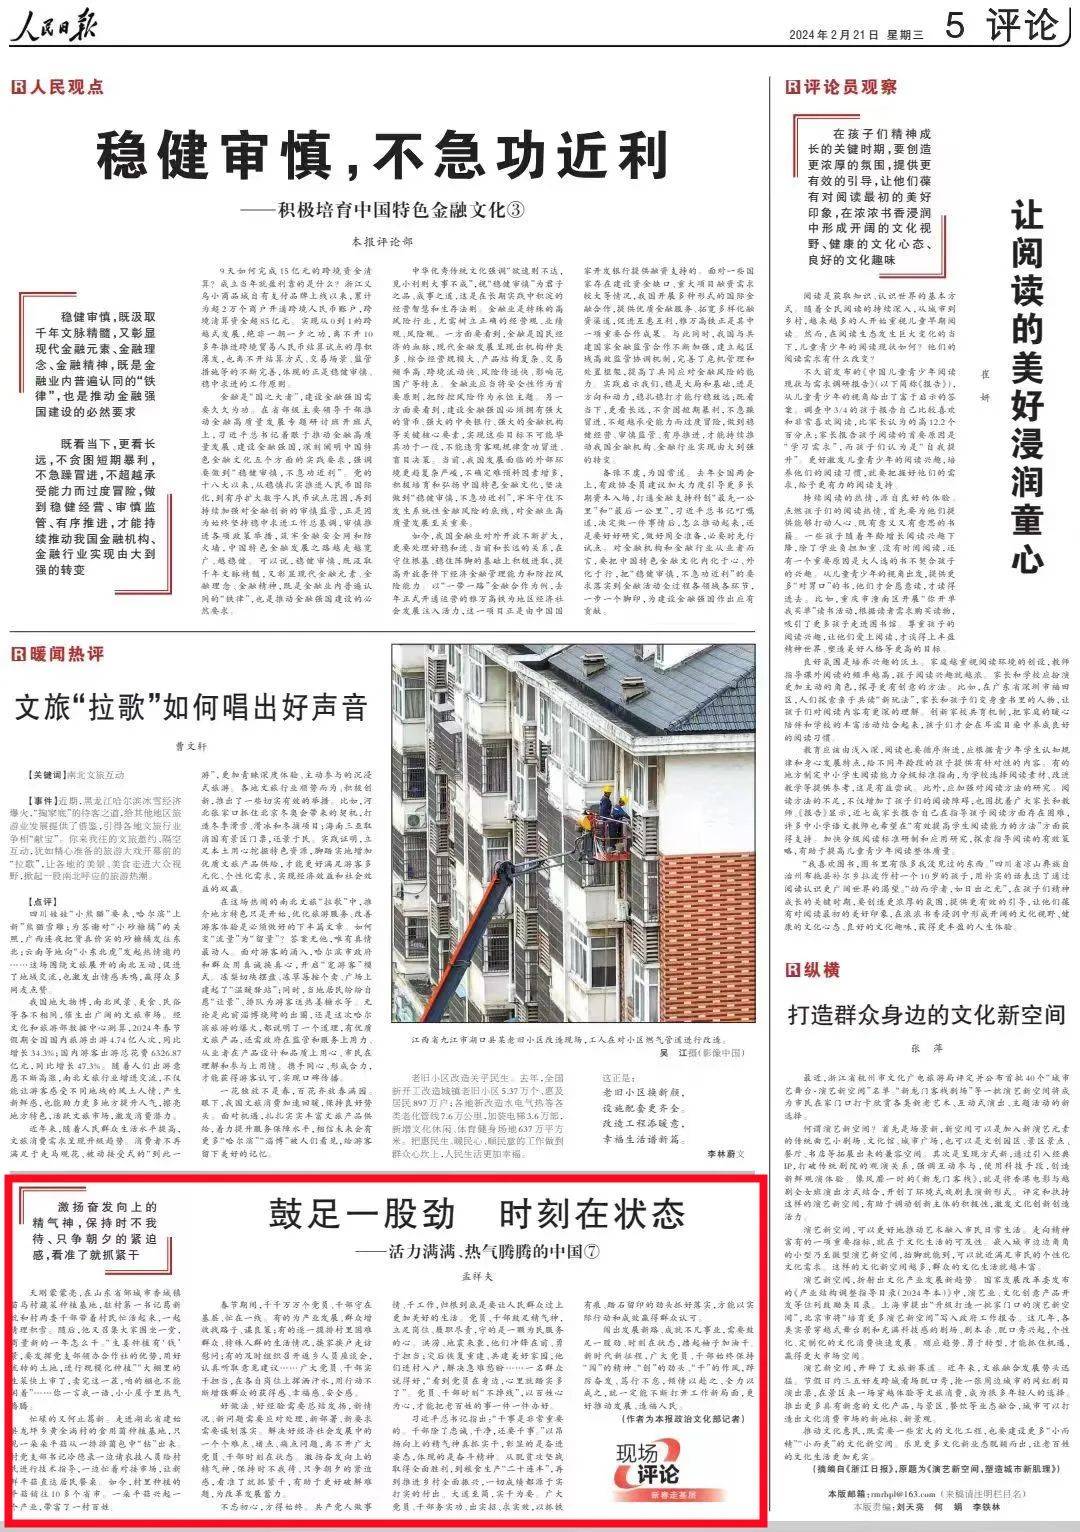 《人民日报》报道邹城驻村干部以实干担当助力乡村振兴的典型经验